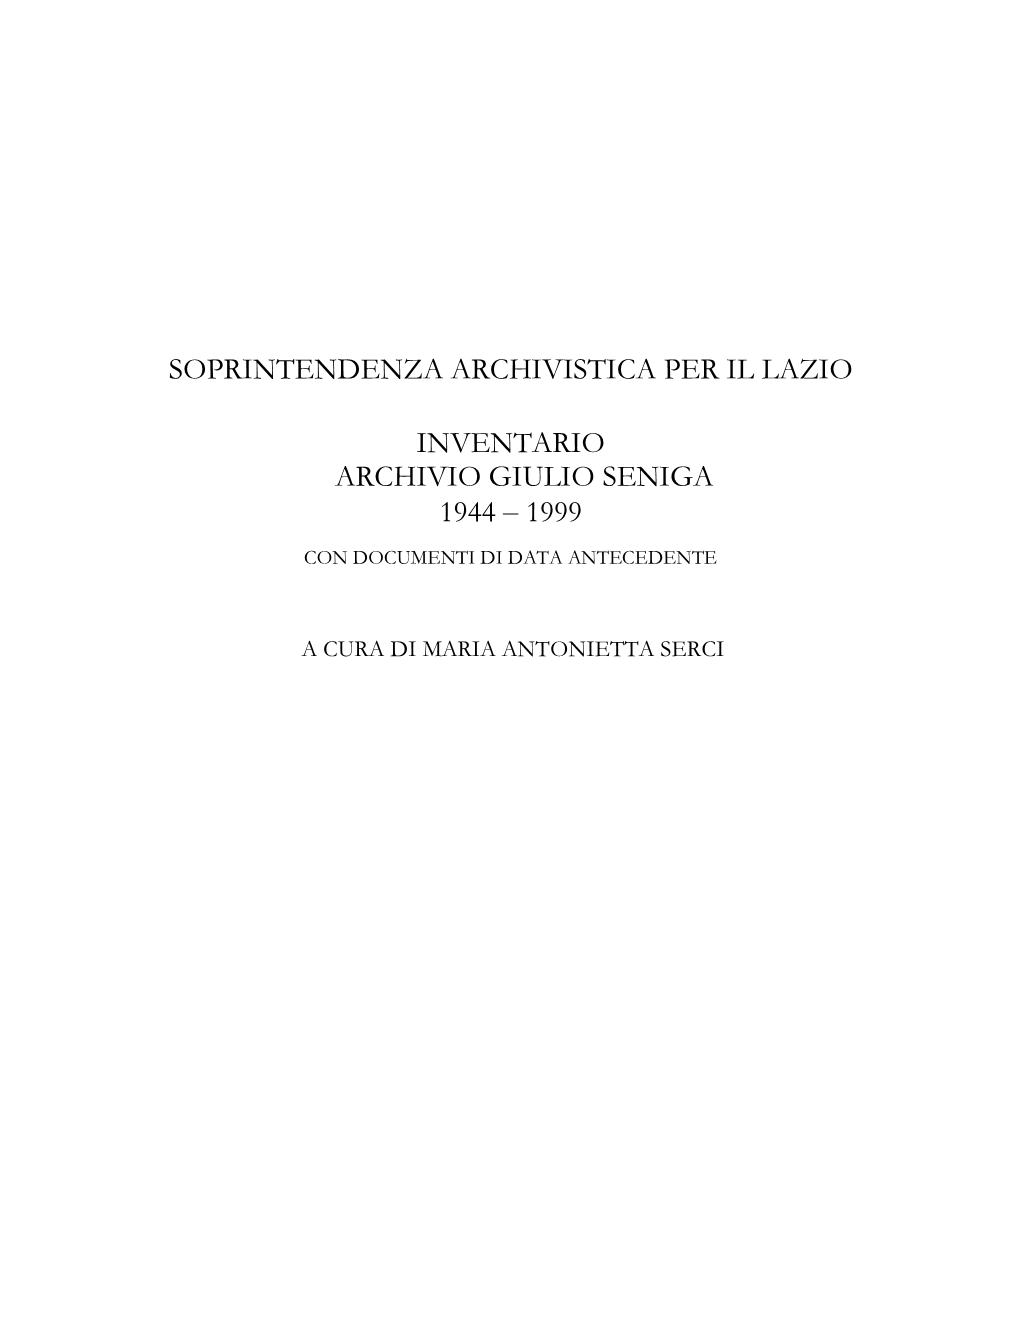 Inventario Archivio Giulio Seniga 1944-1999